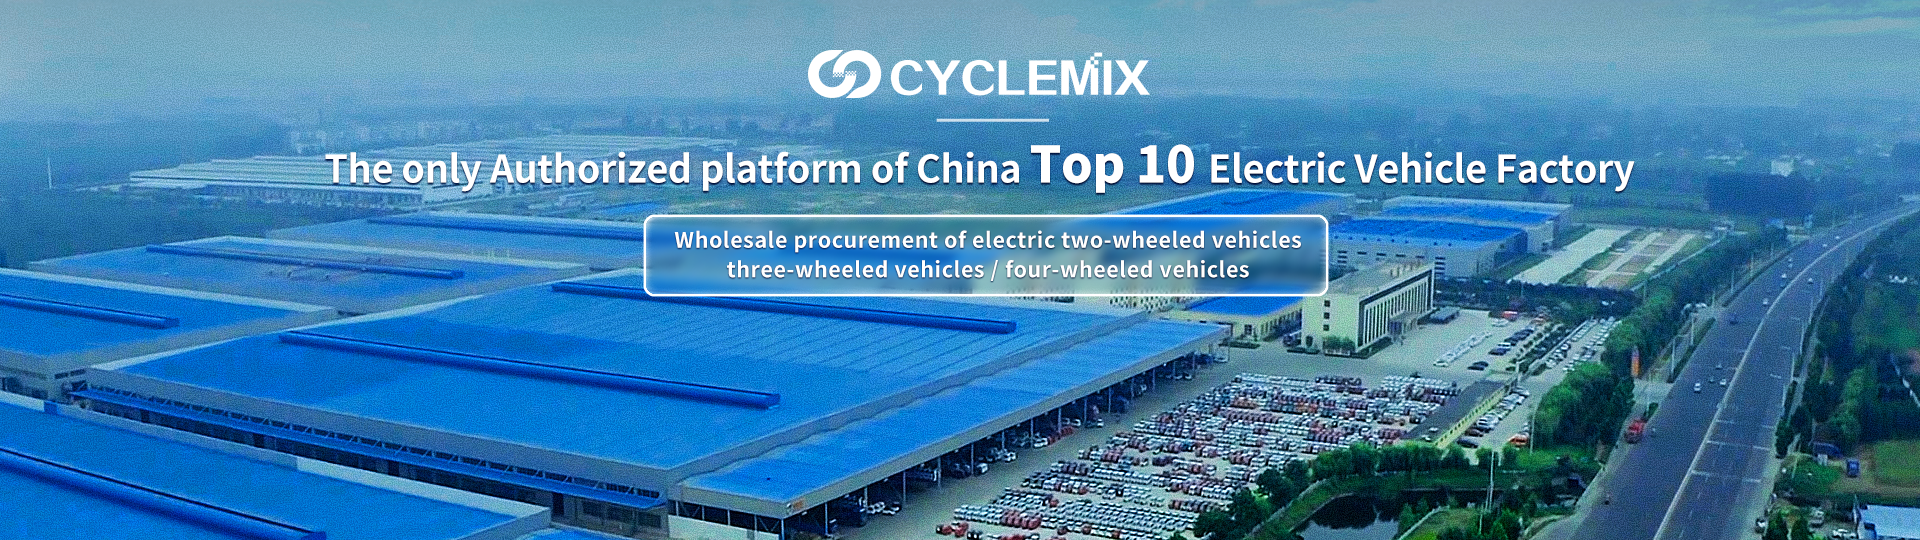 CYCLEMIX Единственная авторизованная сторона/платформа из 10 крупнейших заводов электромобилей Китая.